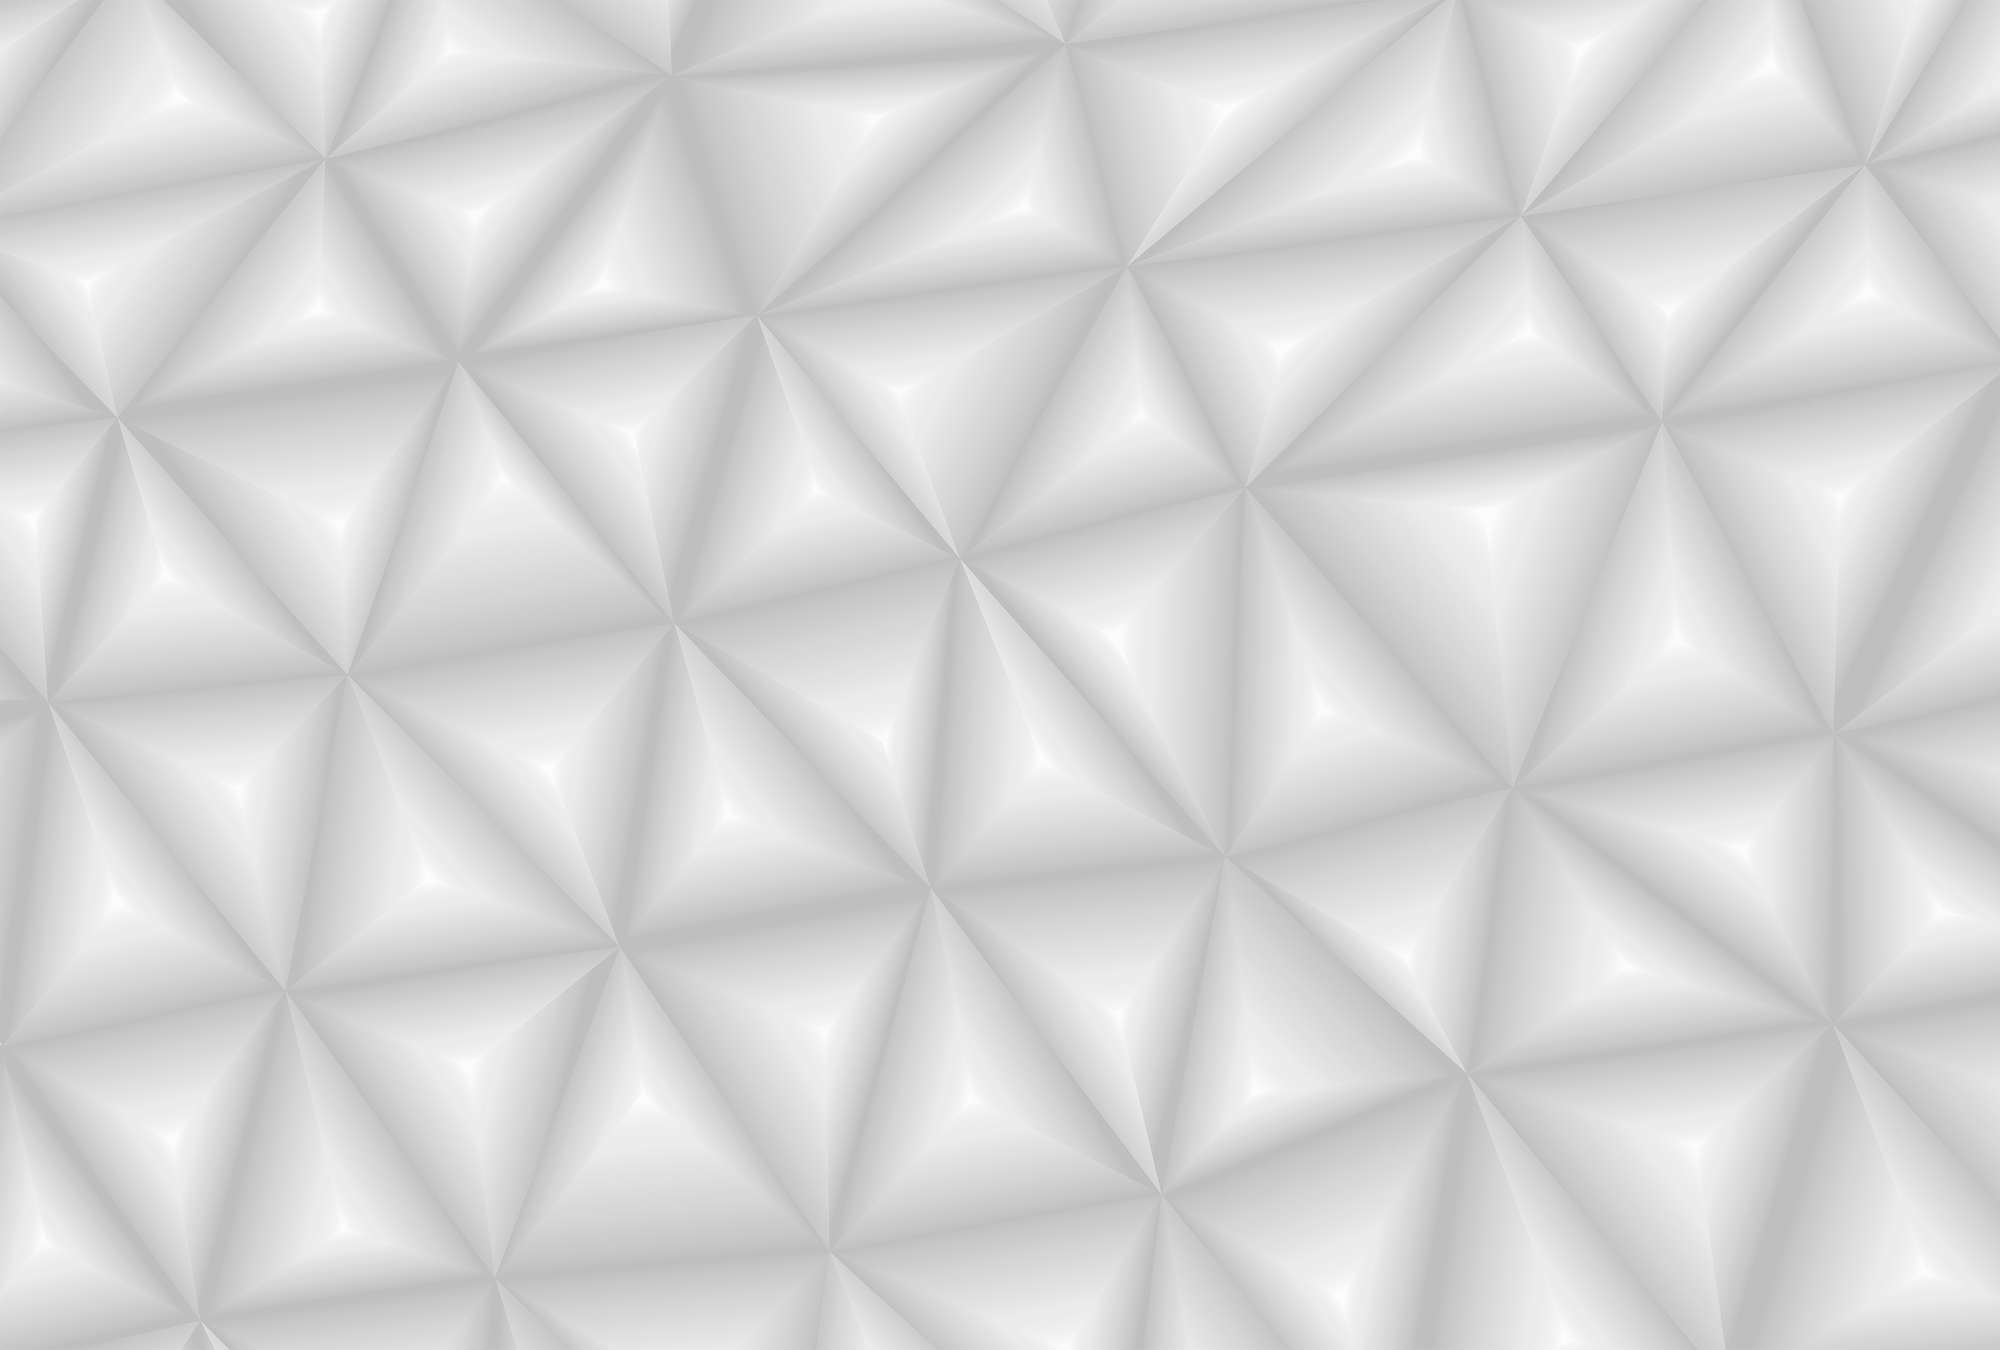             3D Fototapete Grau mit Grafik Dreieck Muster
        